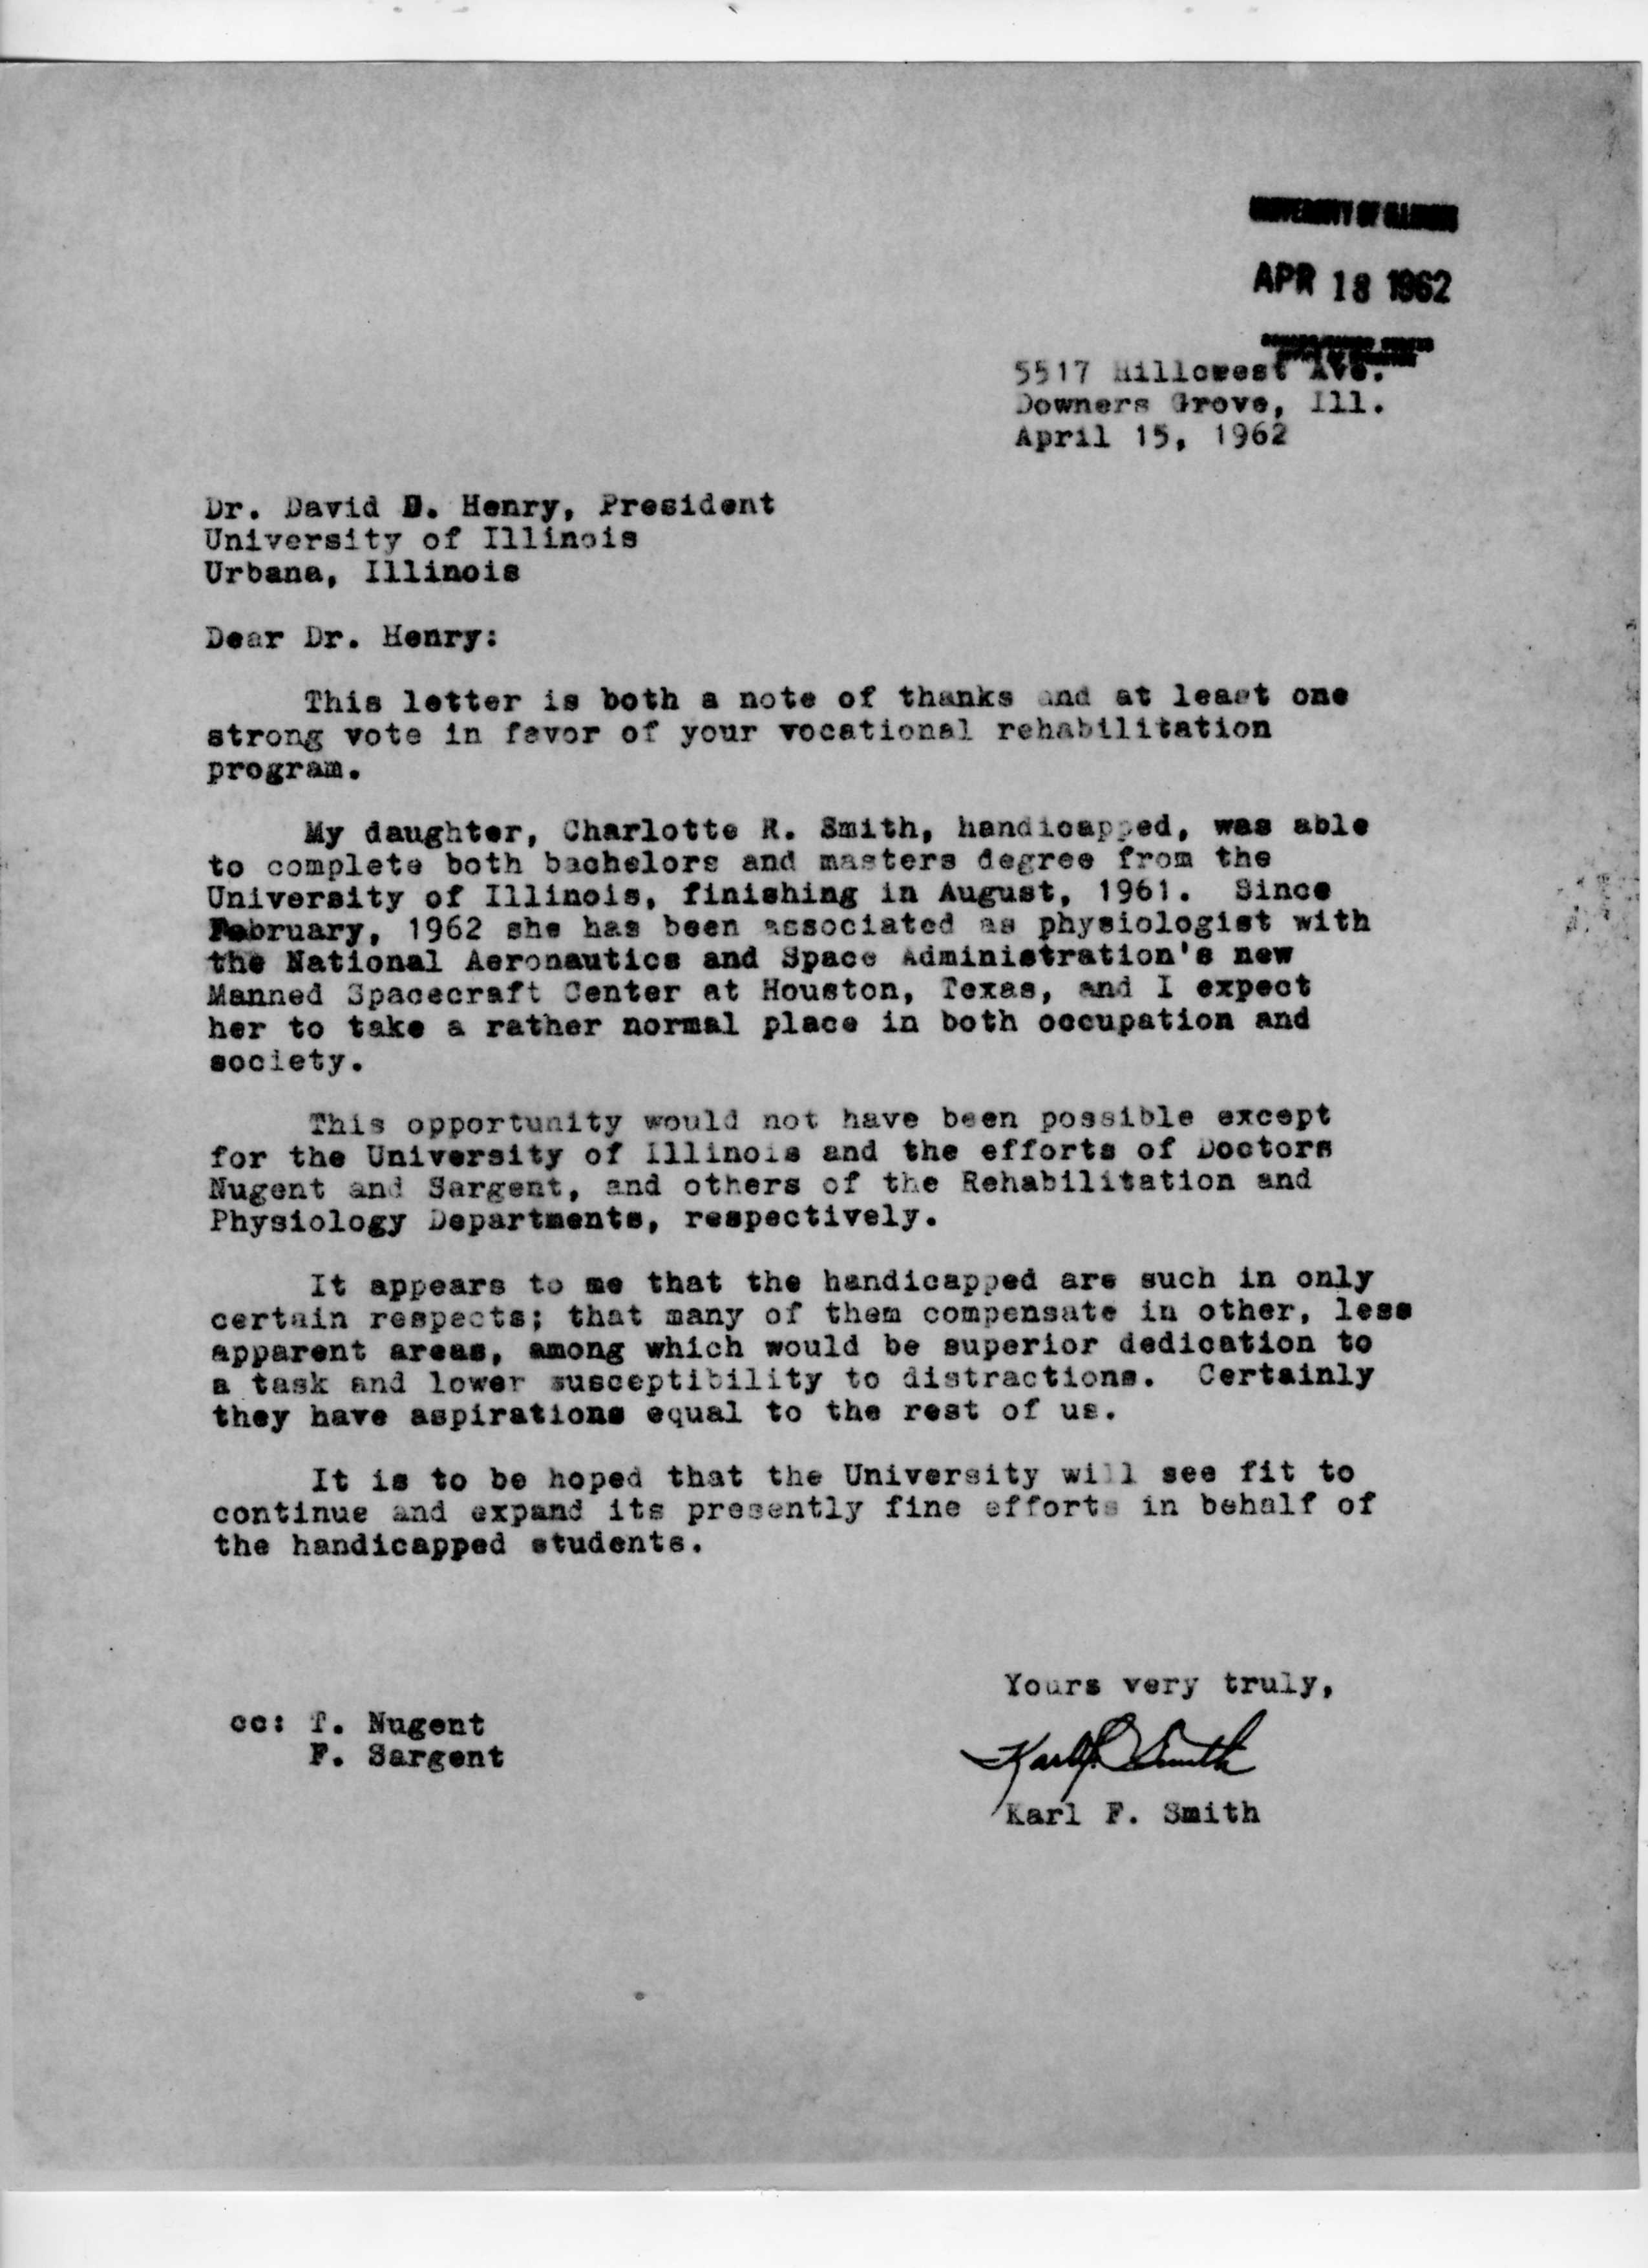 Karl F. Smith Correspondence, April 15, 1962